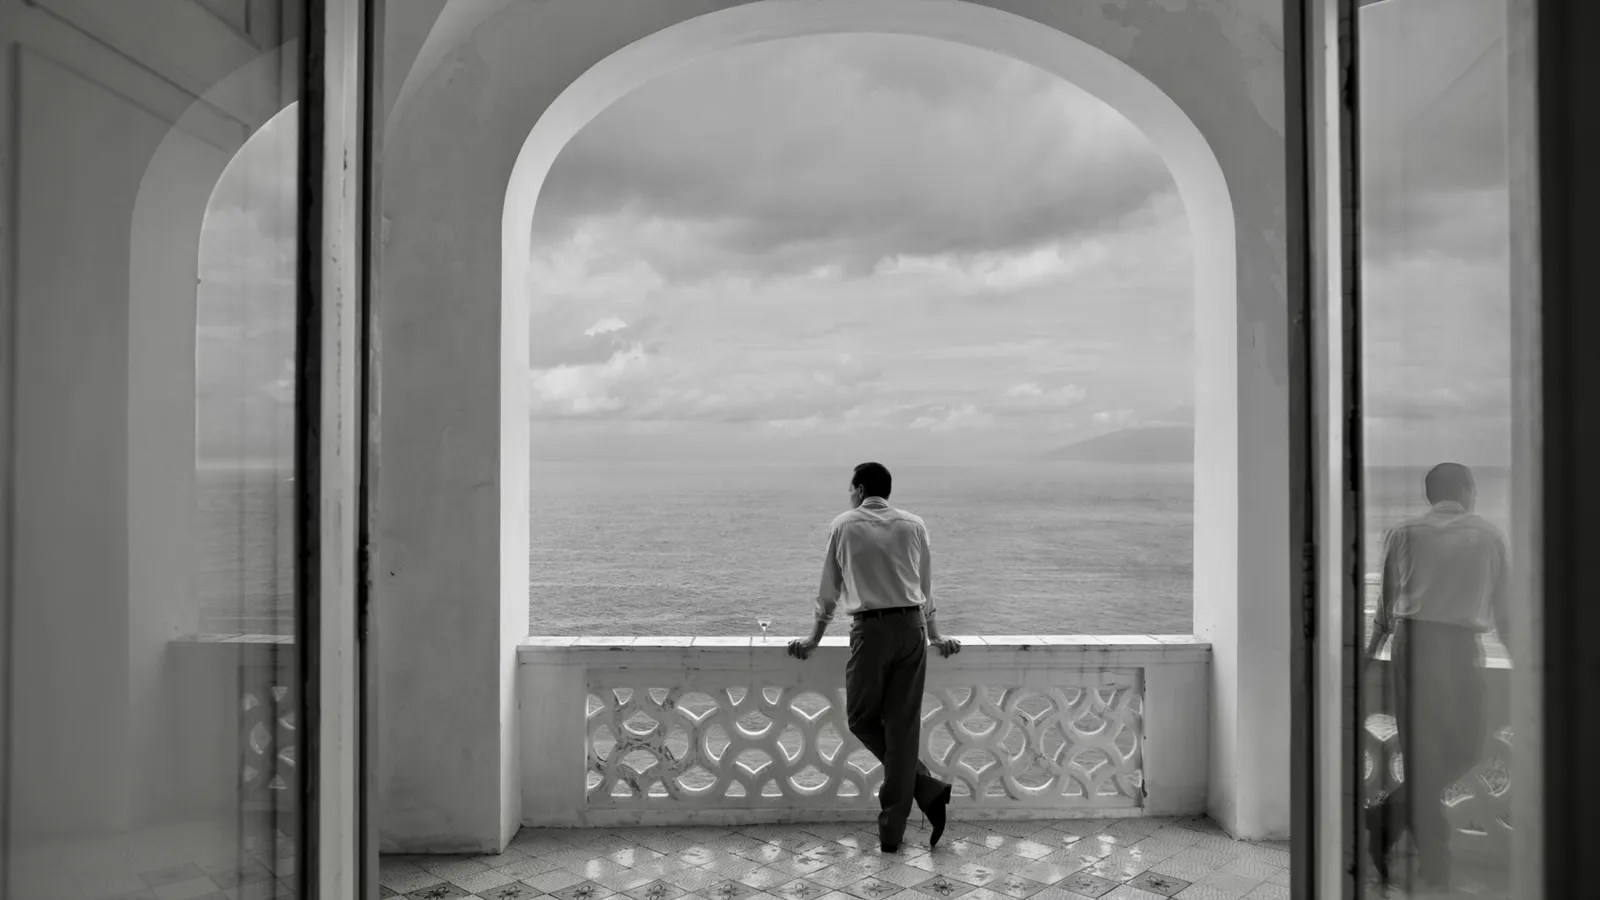 Andrew Scott, Ripley'den siyah beyaz bir fotoğrafta muhteşem okyanus manzarasına bakıyor